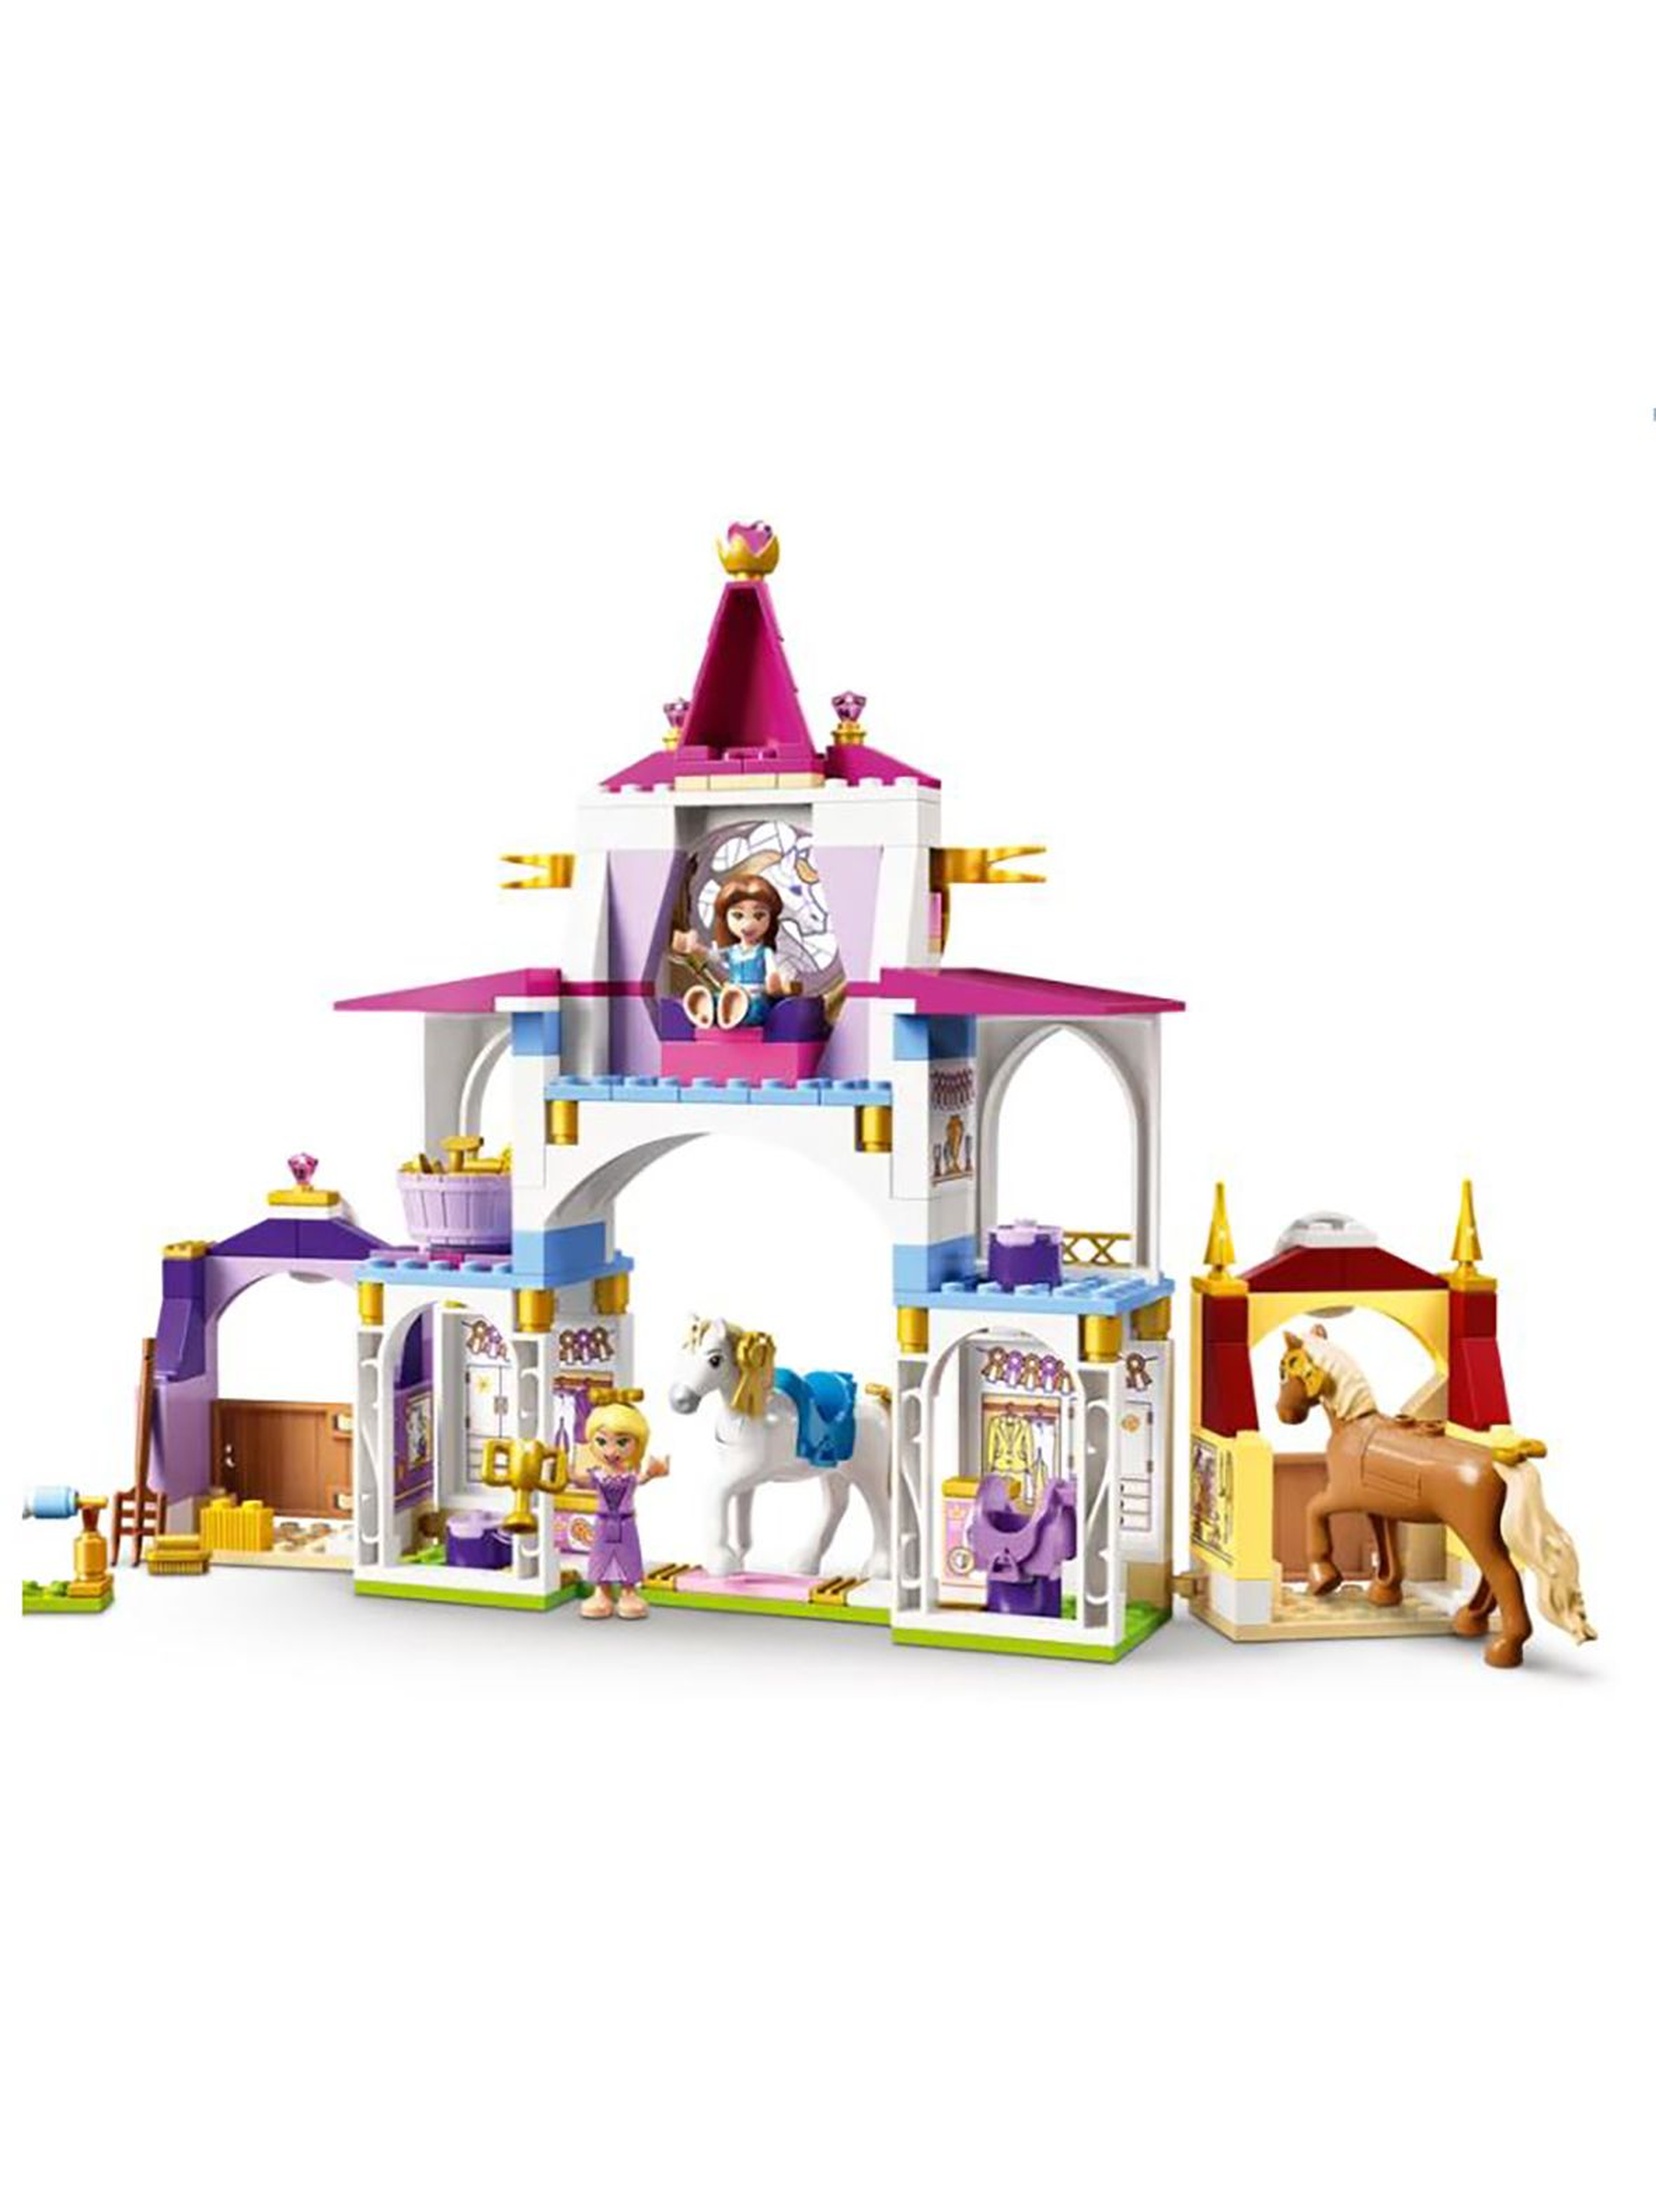 LEGO® ǀ Disney Królewskie stajnie Belli i Roszpunki 43195 wiek 5+